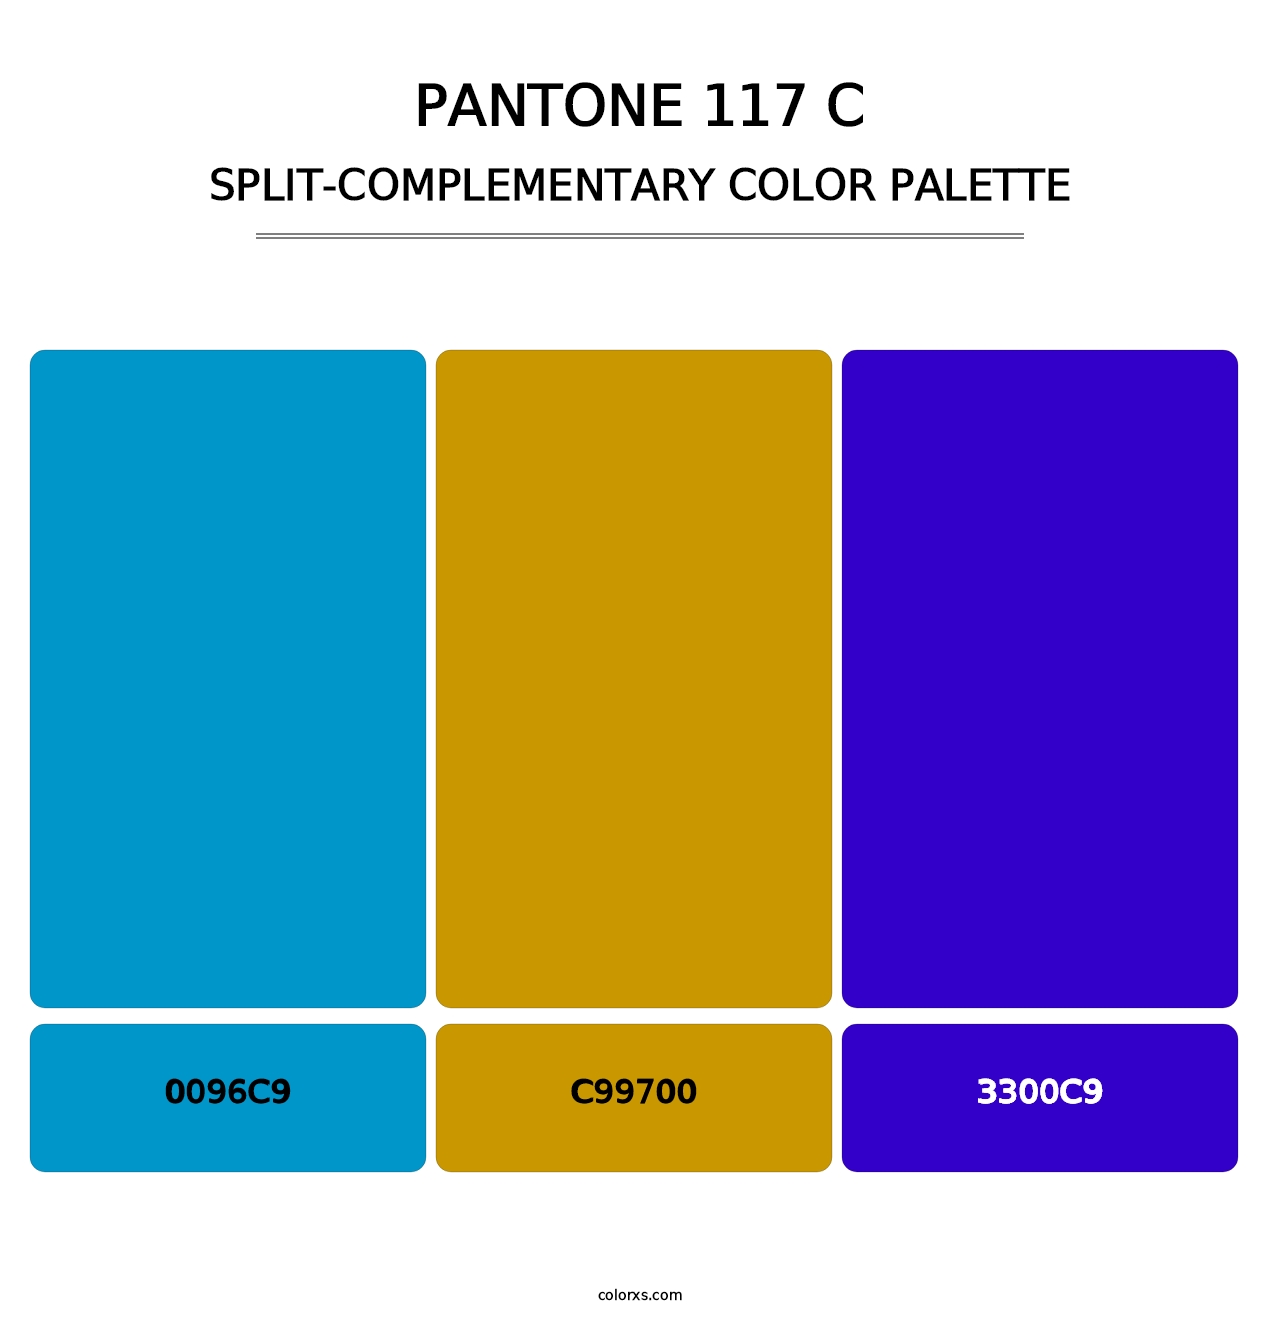 PANTONE 117 C - Split-Complementary Color Palette